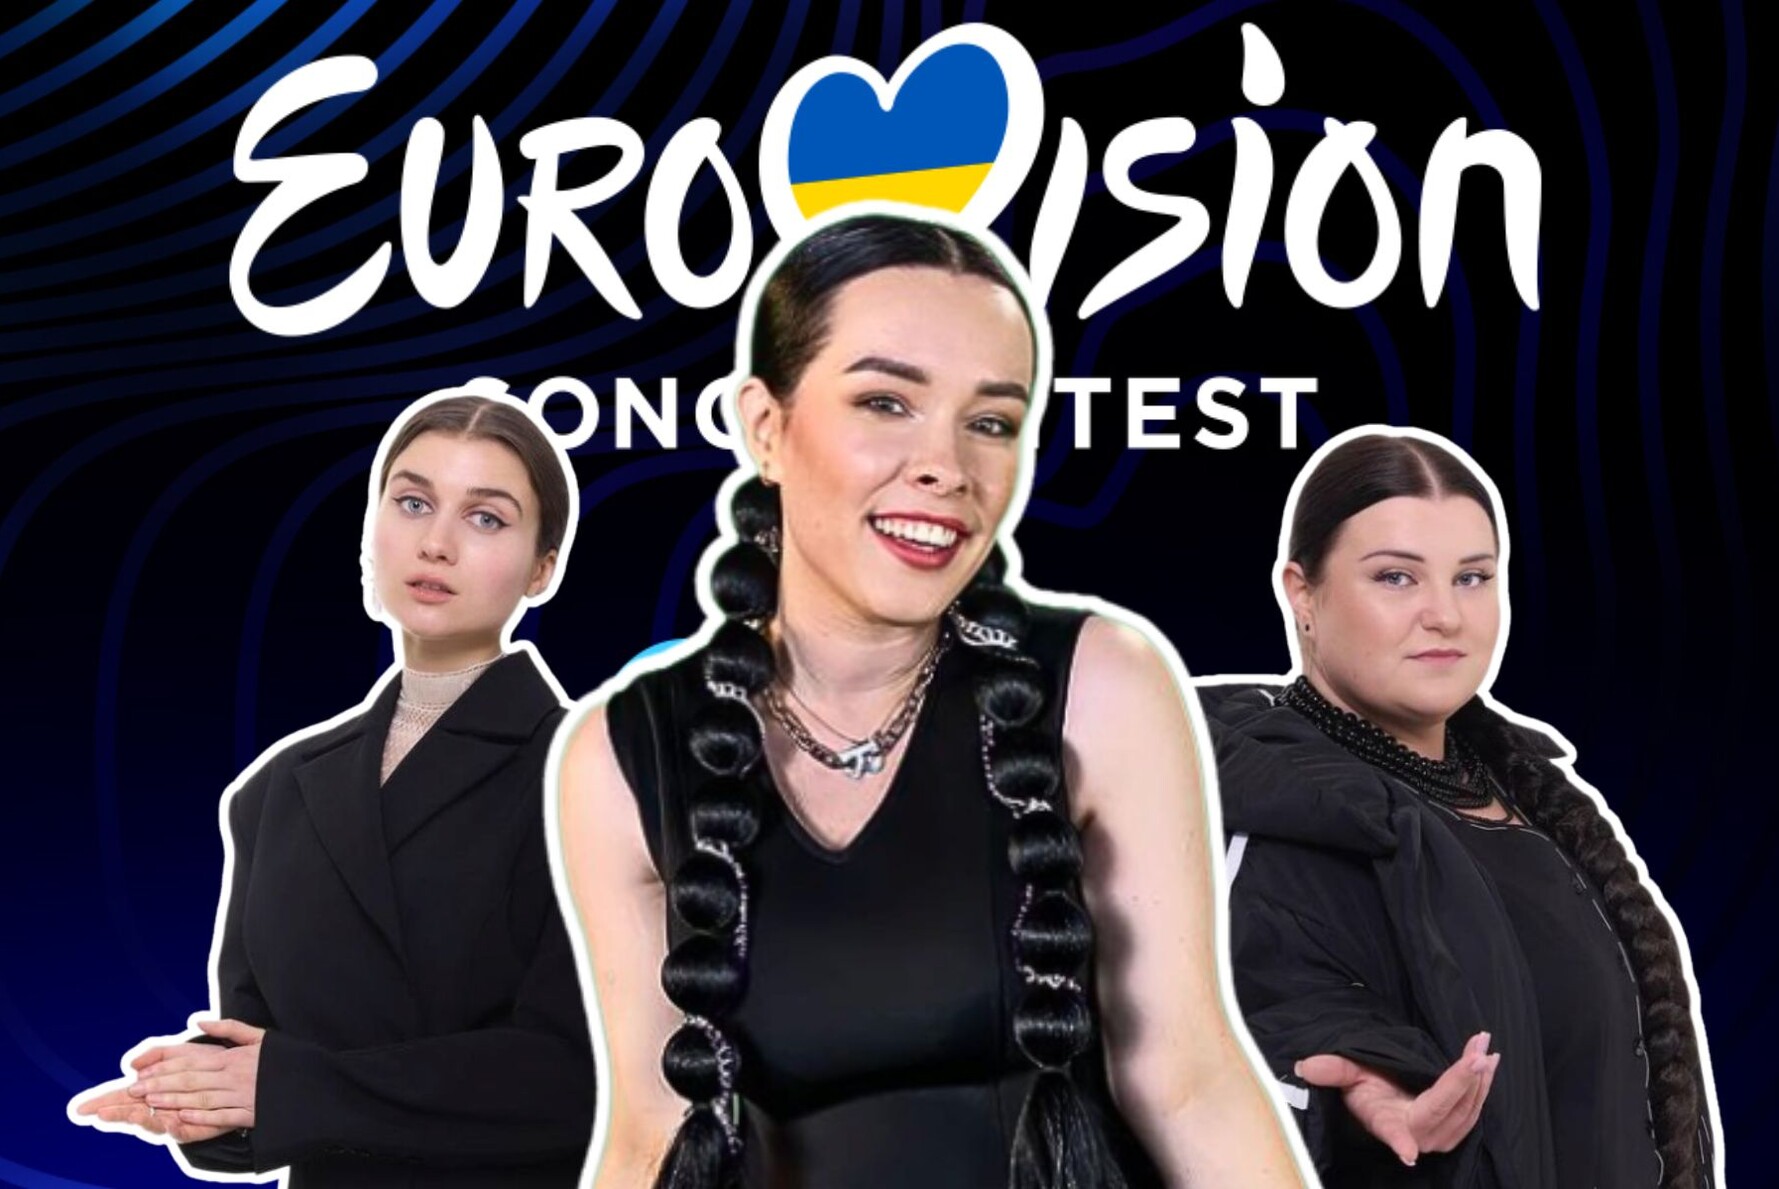 Зірка нацвідбору «Євробачення». Інтерв’ю з перекладачкою жестової мови, яка підкорила глядачів